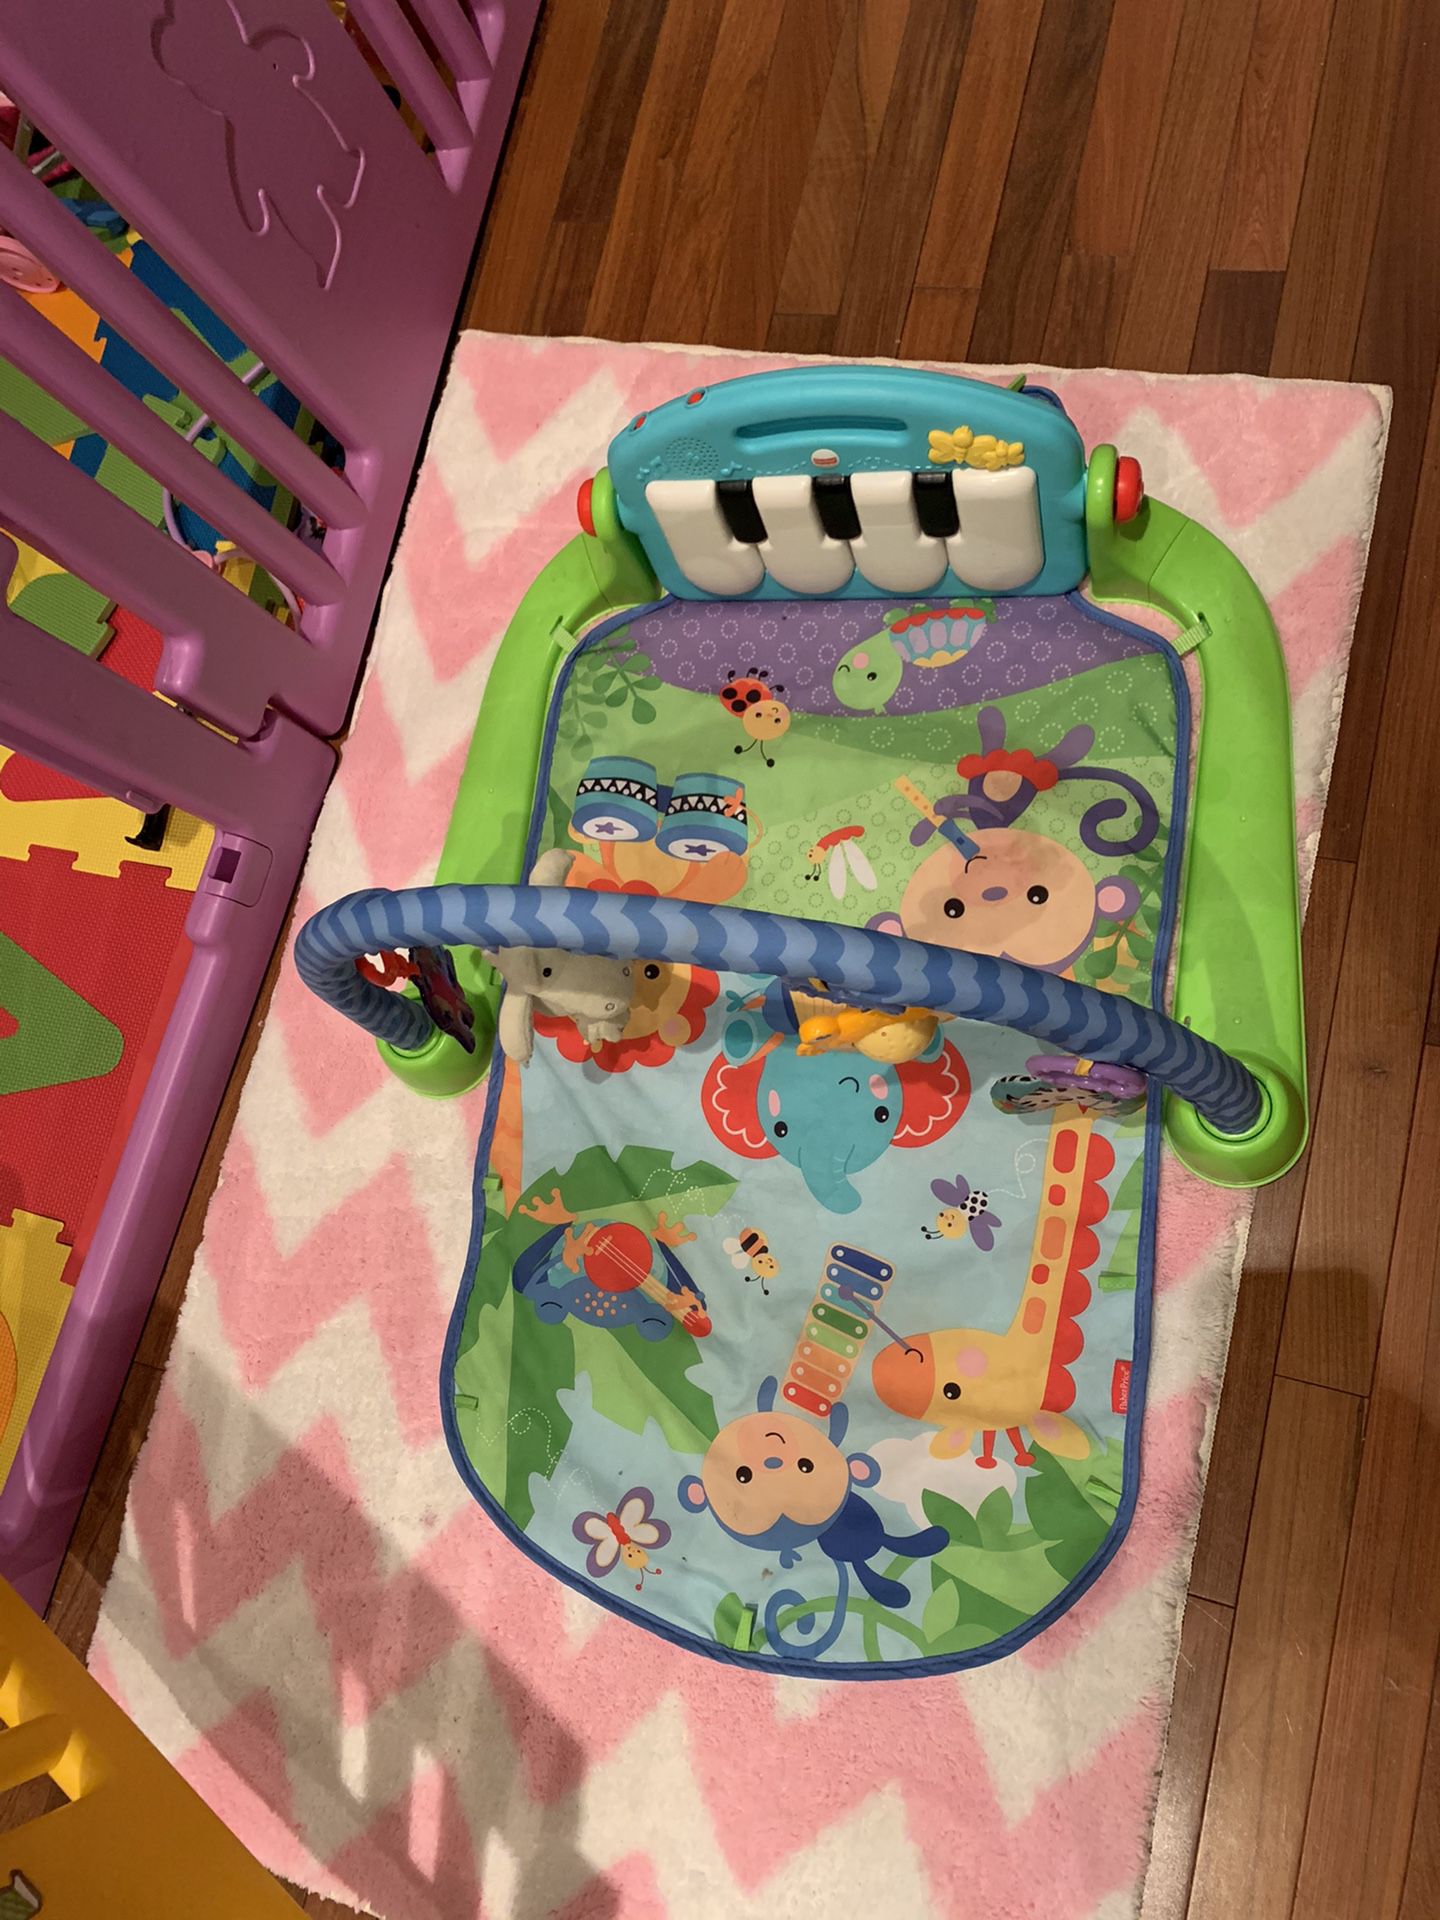 Baby floor activity set